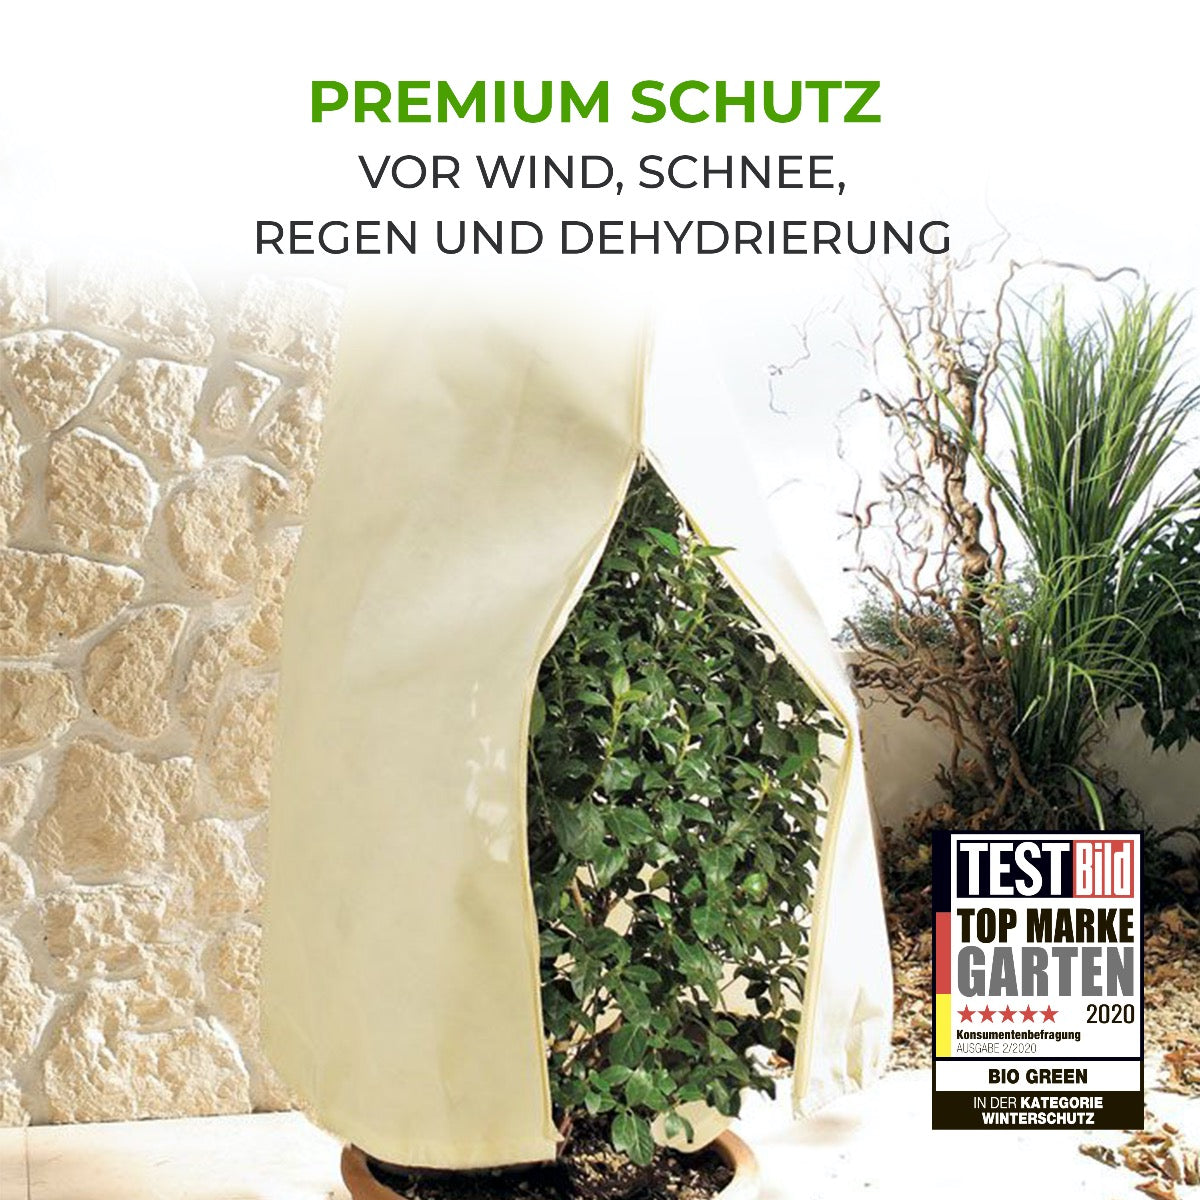 Bio Green Pflanzenschutzsack XL zum Schutz vor Wind, Schnee, Regen und Dehydrierung